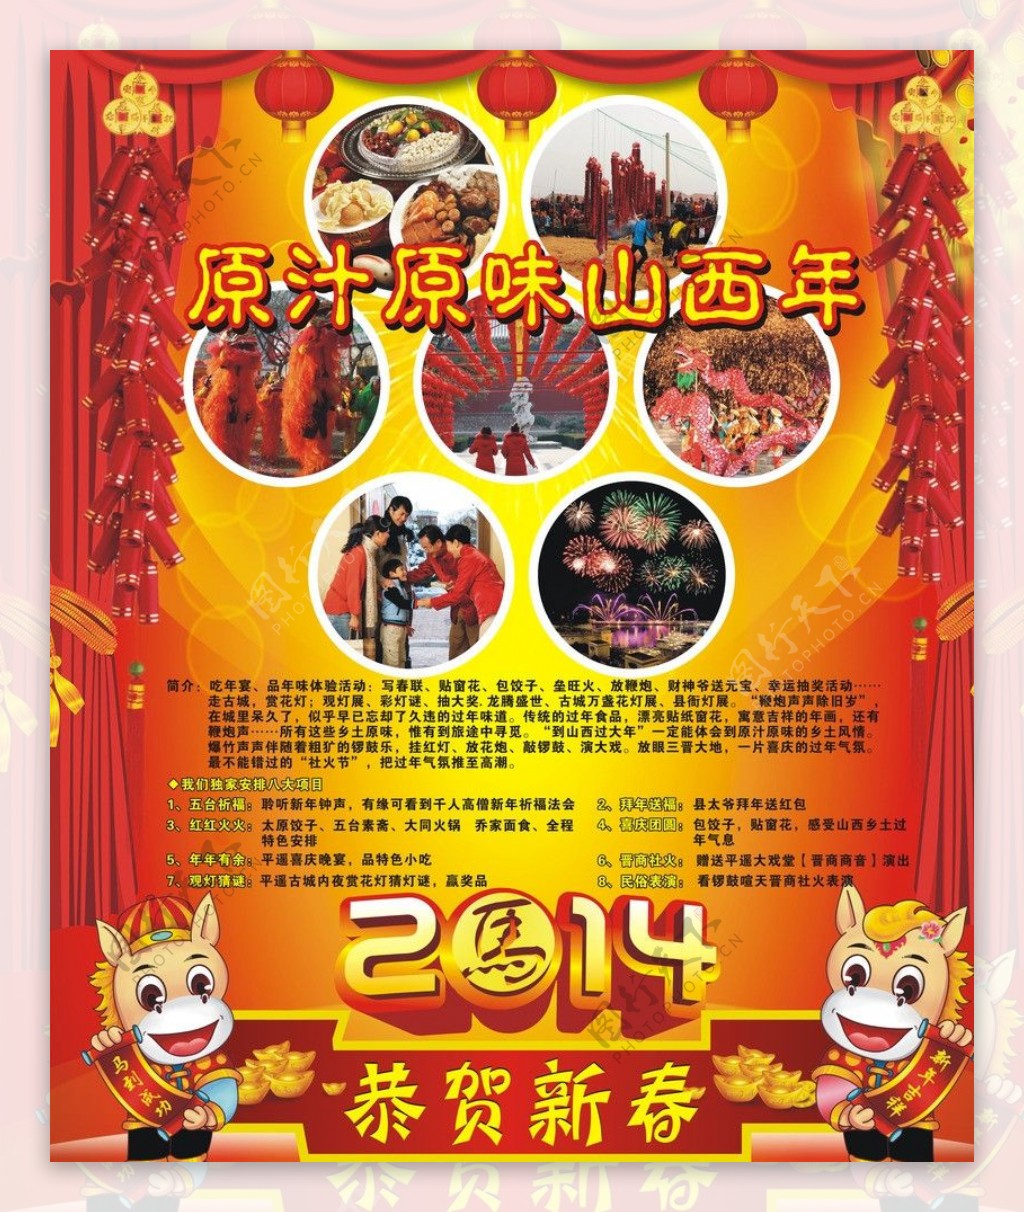 春节背景板图片